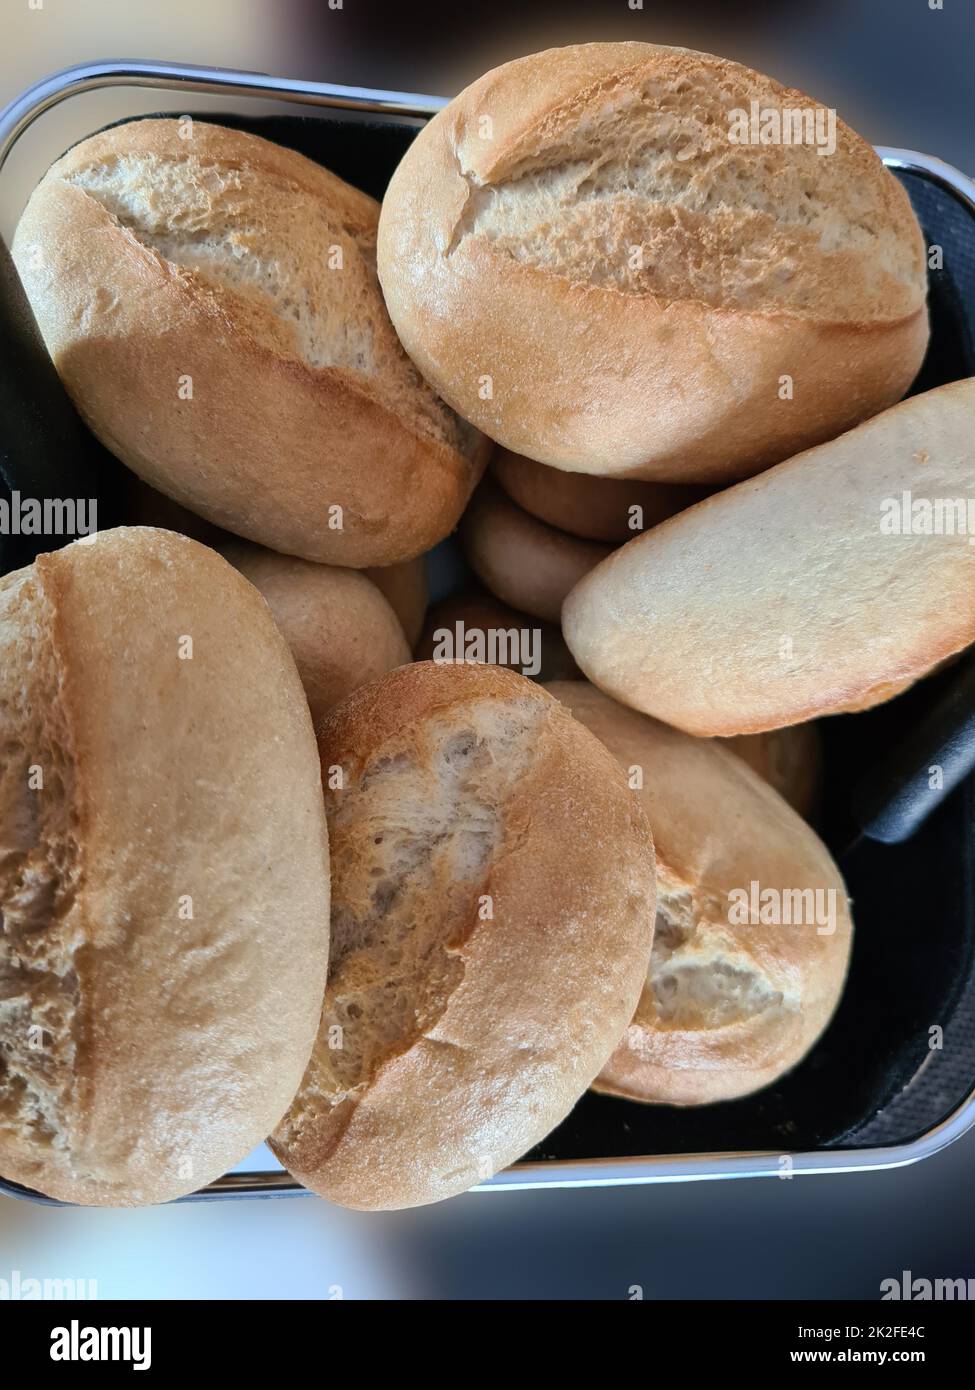 Petits pains frais / pâtisseries dans un panier à pain Banque D'Images